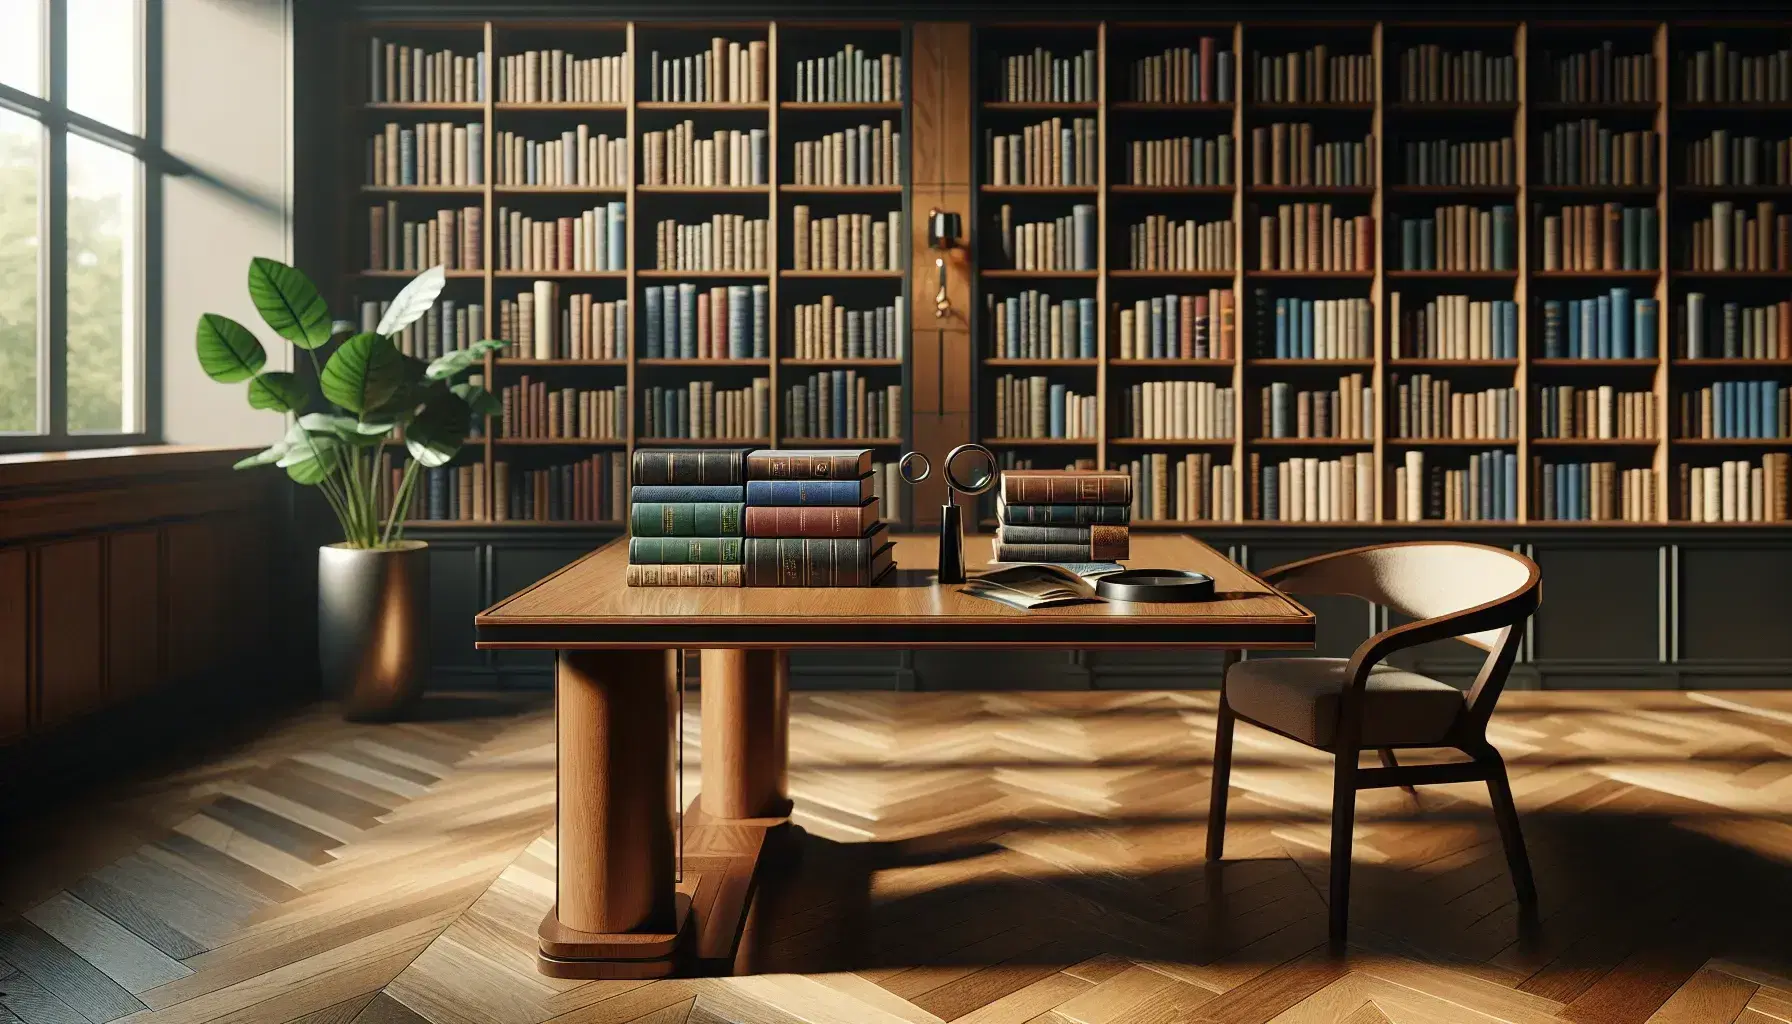 Biblioteca acogedora con estanterías de madera oscura llenas de libros, mesa con libros apilados y lupa, luz natural y planta verde.